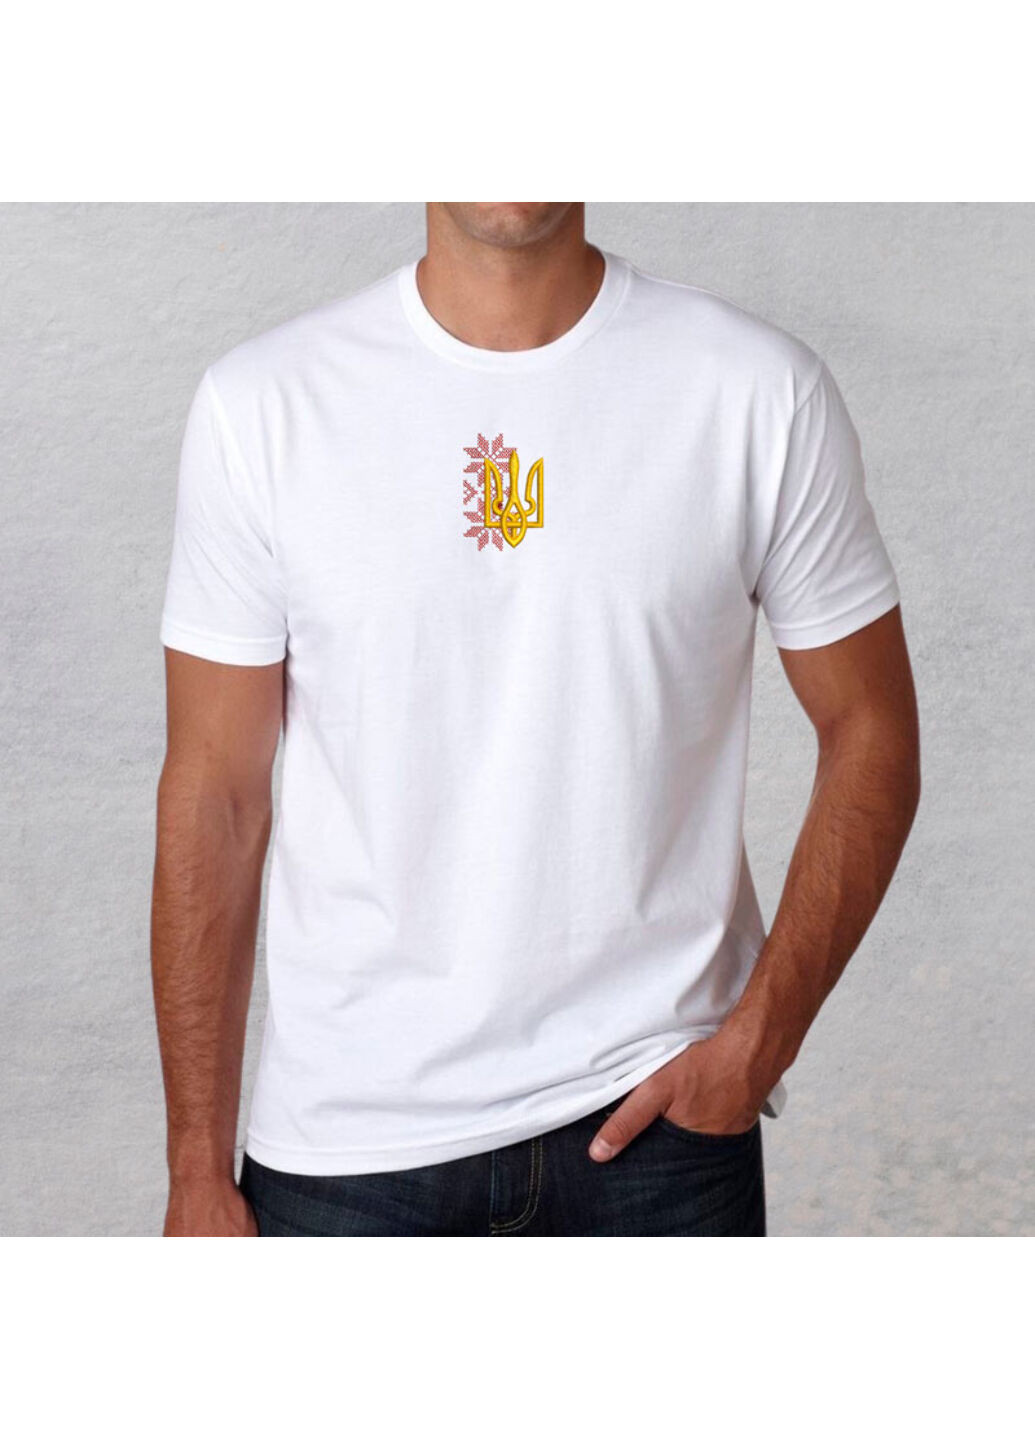 Біла футболка з вишивкою тризуба 01-7 чоловіча білий xl No Brand